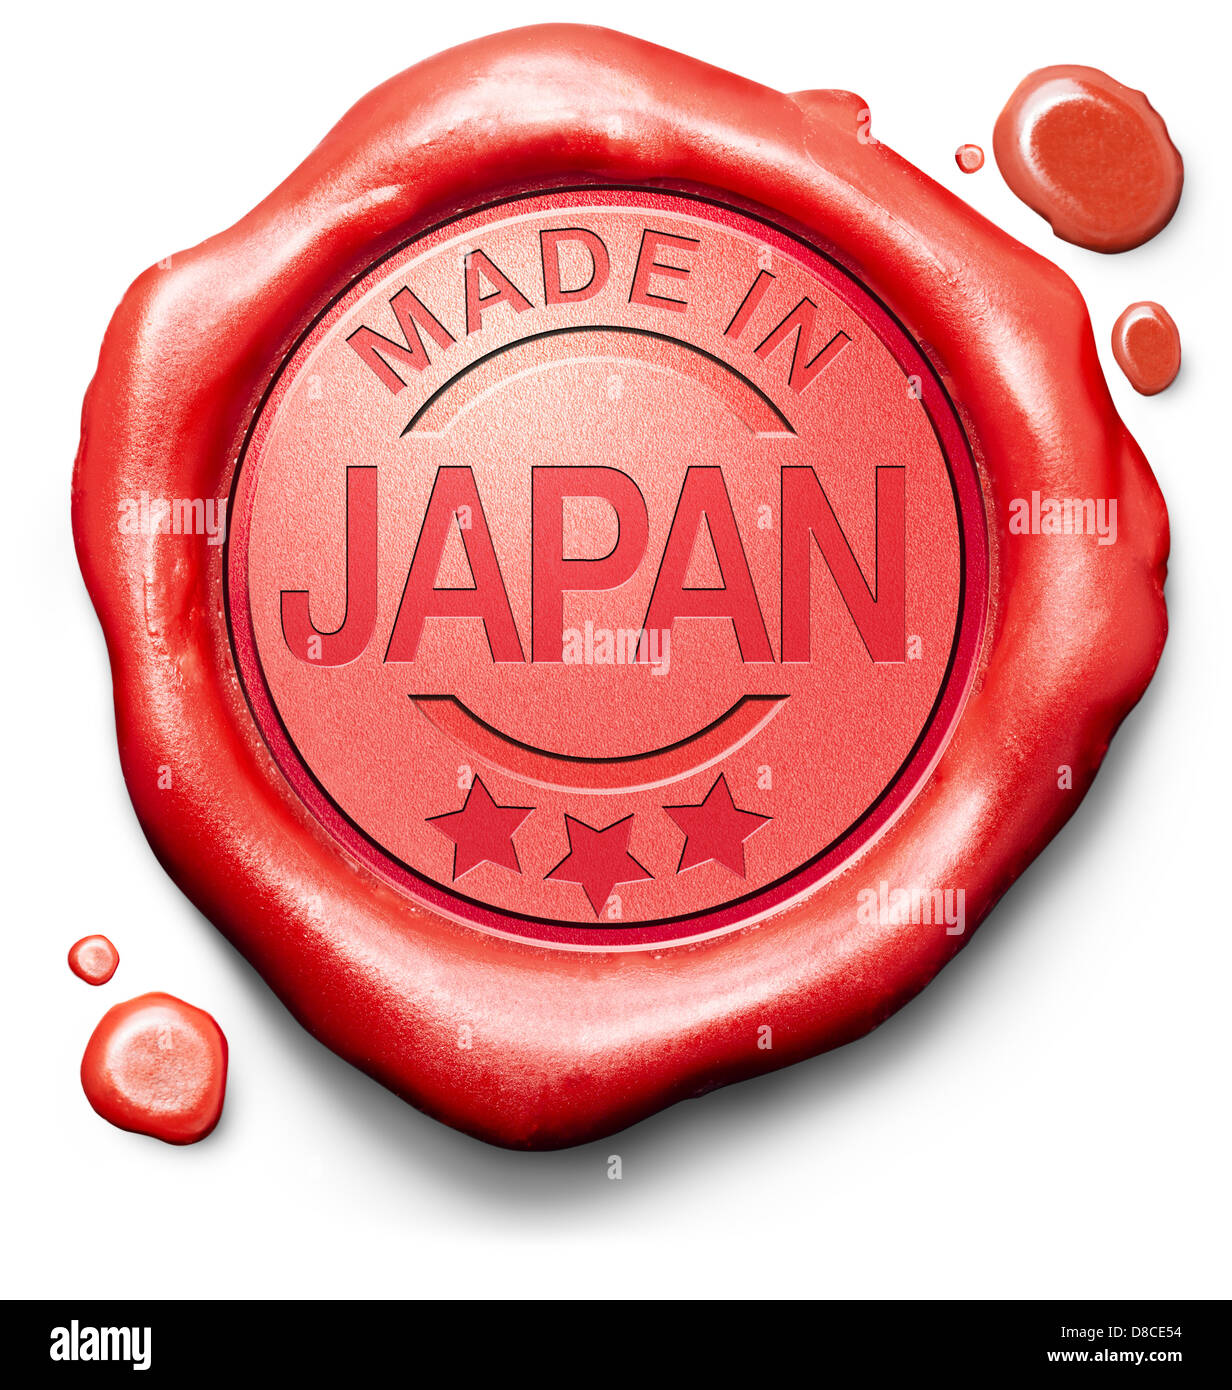 Fabriqué au Japon produit original acheter acheter local japonais authentique label qualité sceaux de cire rouge Banque D'Images